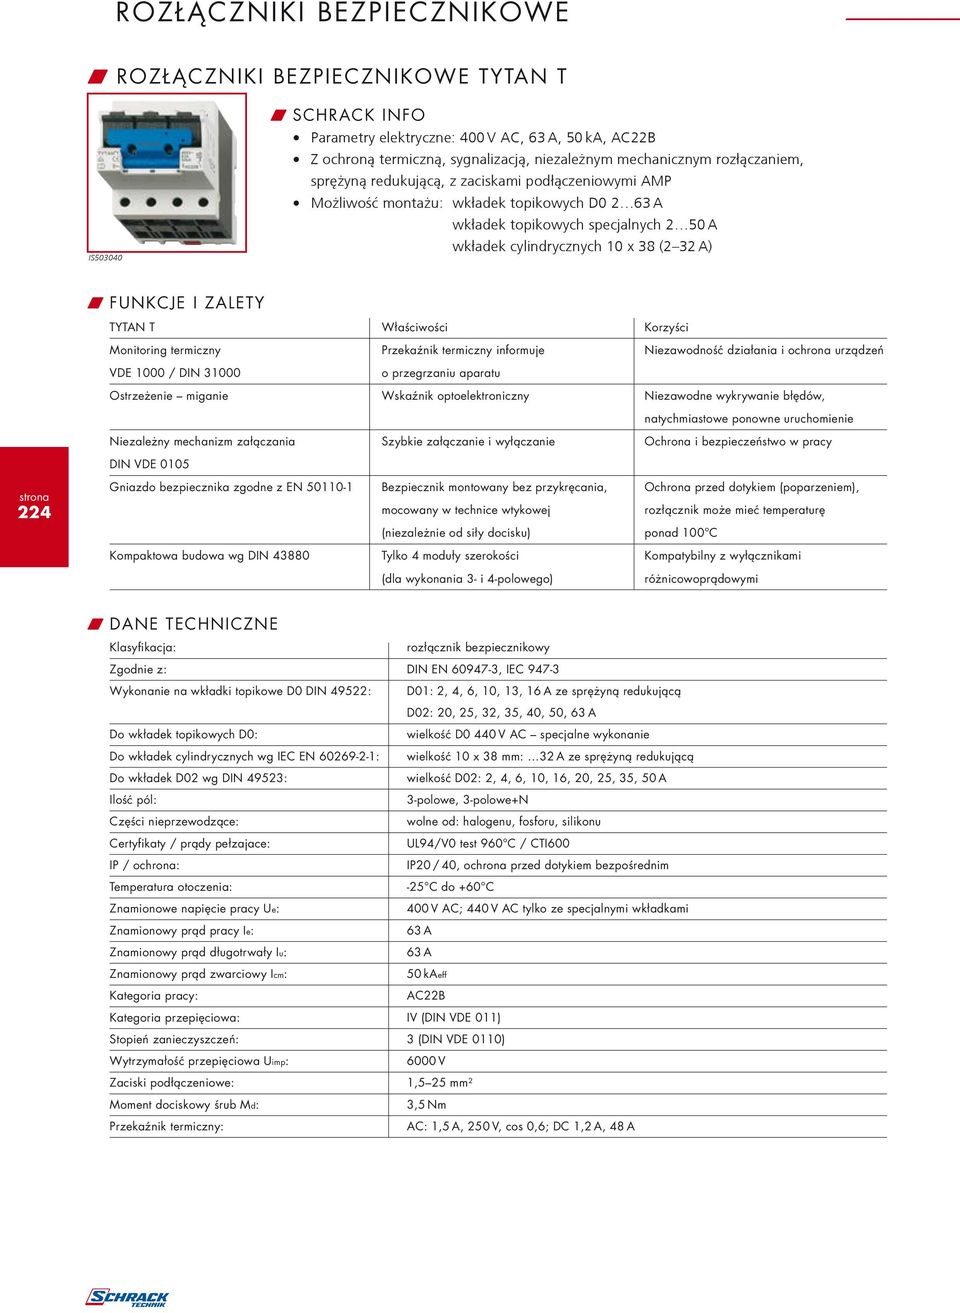 TYTAN T Właściwości Korzyści Monitoring termiczny Przekaźnik termiczny informuje Niezawodność działania i ochrona urządzeń VDE 1000 / DIN 31000 o przegrzaniu aparatu Ostrzeżenie miganie Wskaźnik